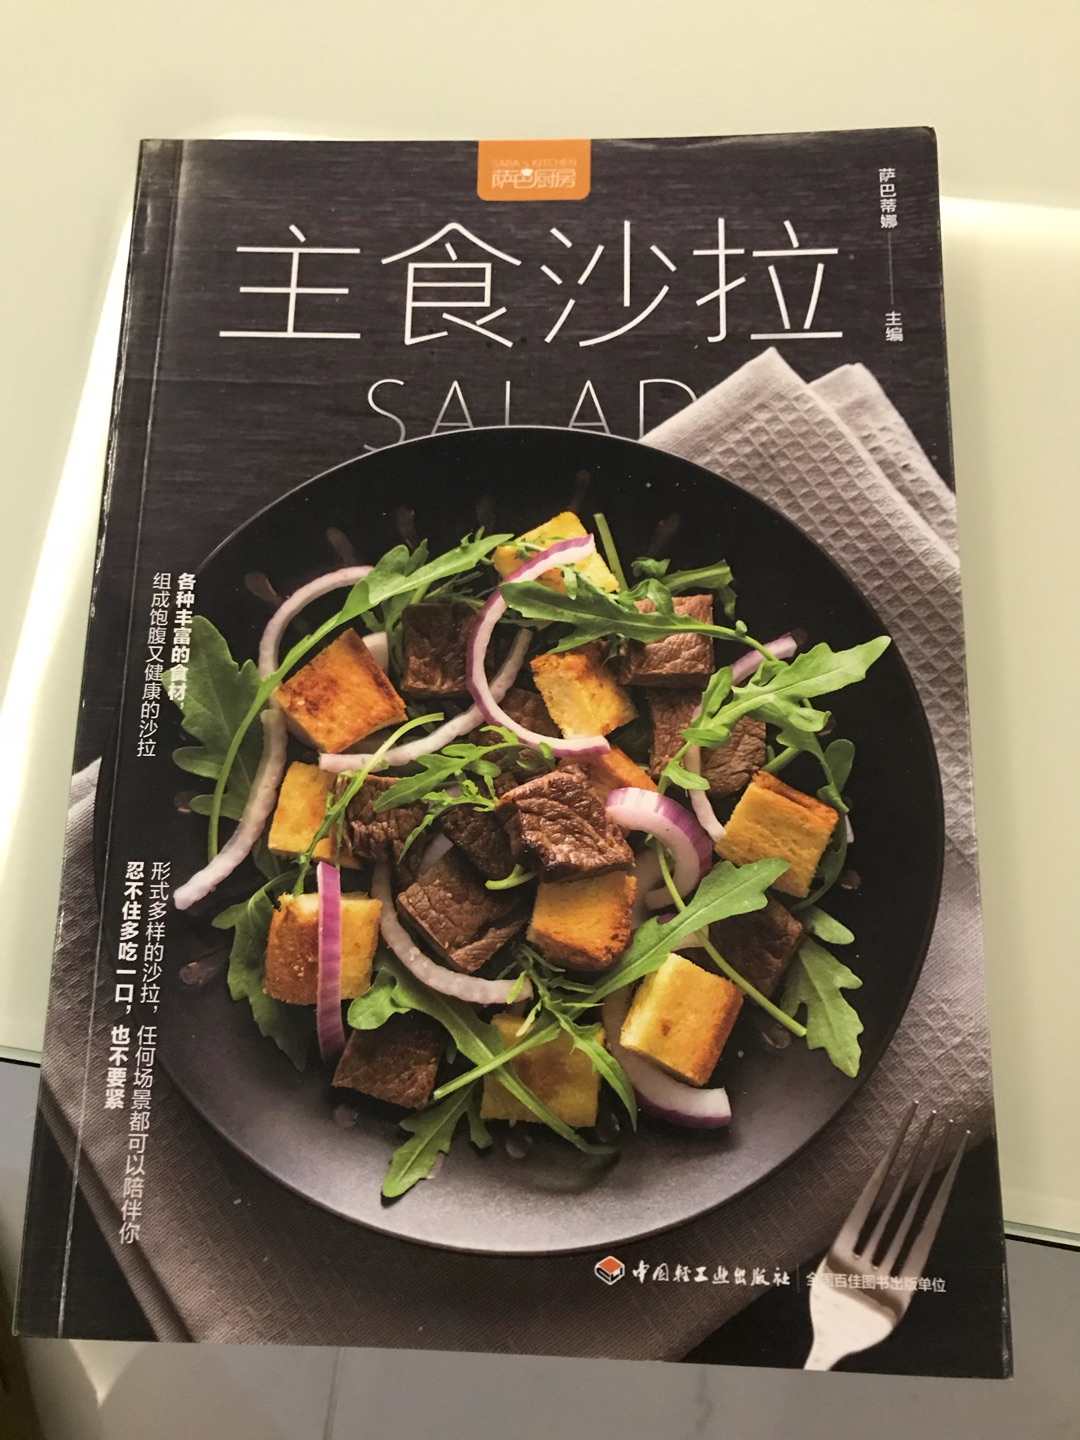 书的质量非常好，印刷精美，里头有很多种沙拉的做法，喜欢吃沙拉的朋友推荐购买此书。